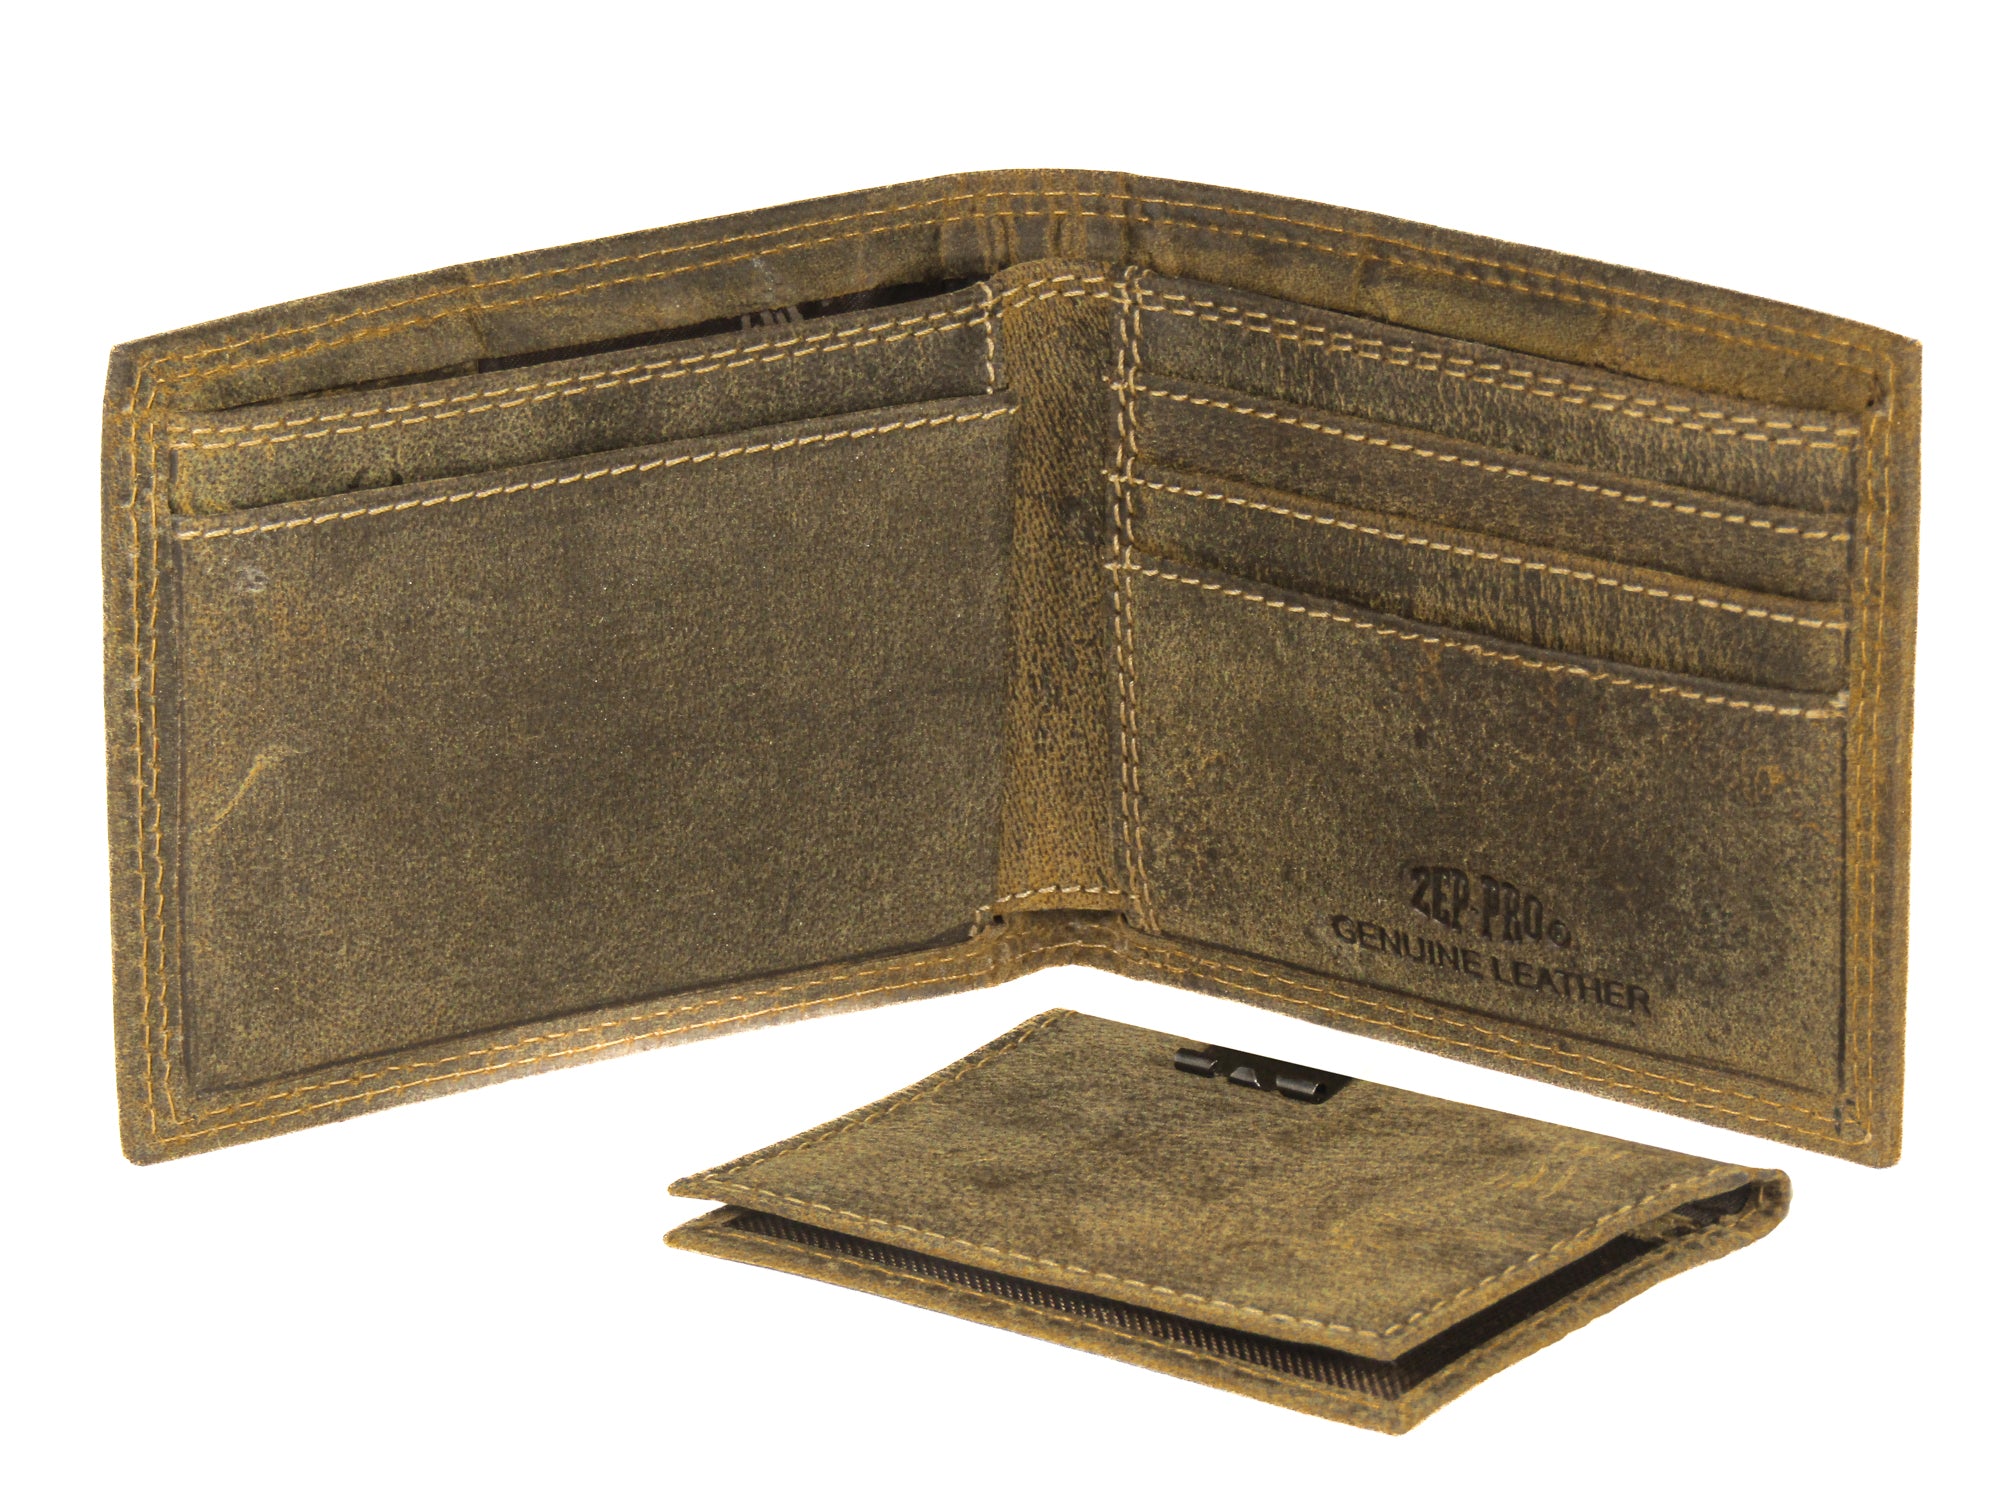 Alabama Crimson Tide Vintage Tan Leather Bifold Wallet